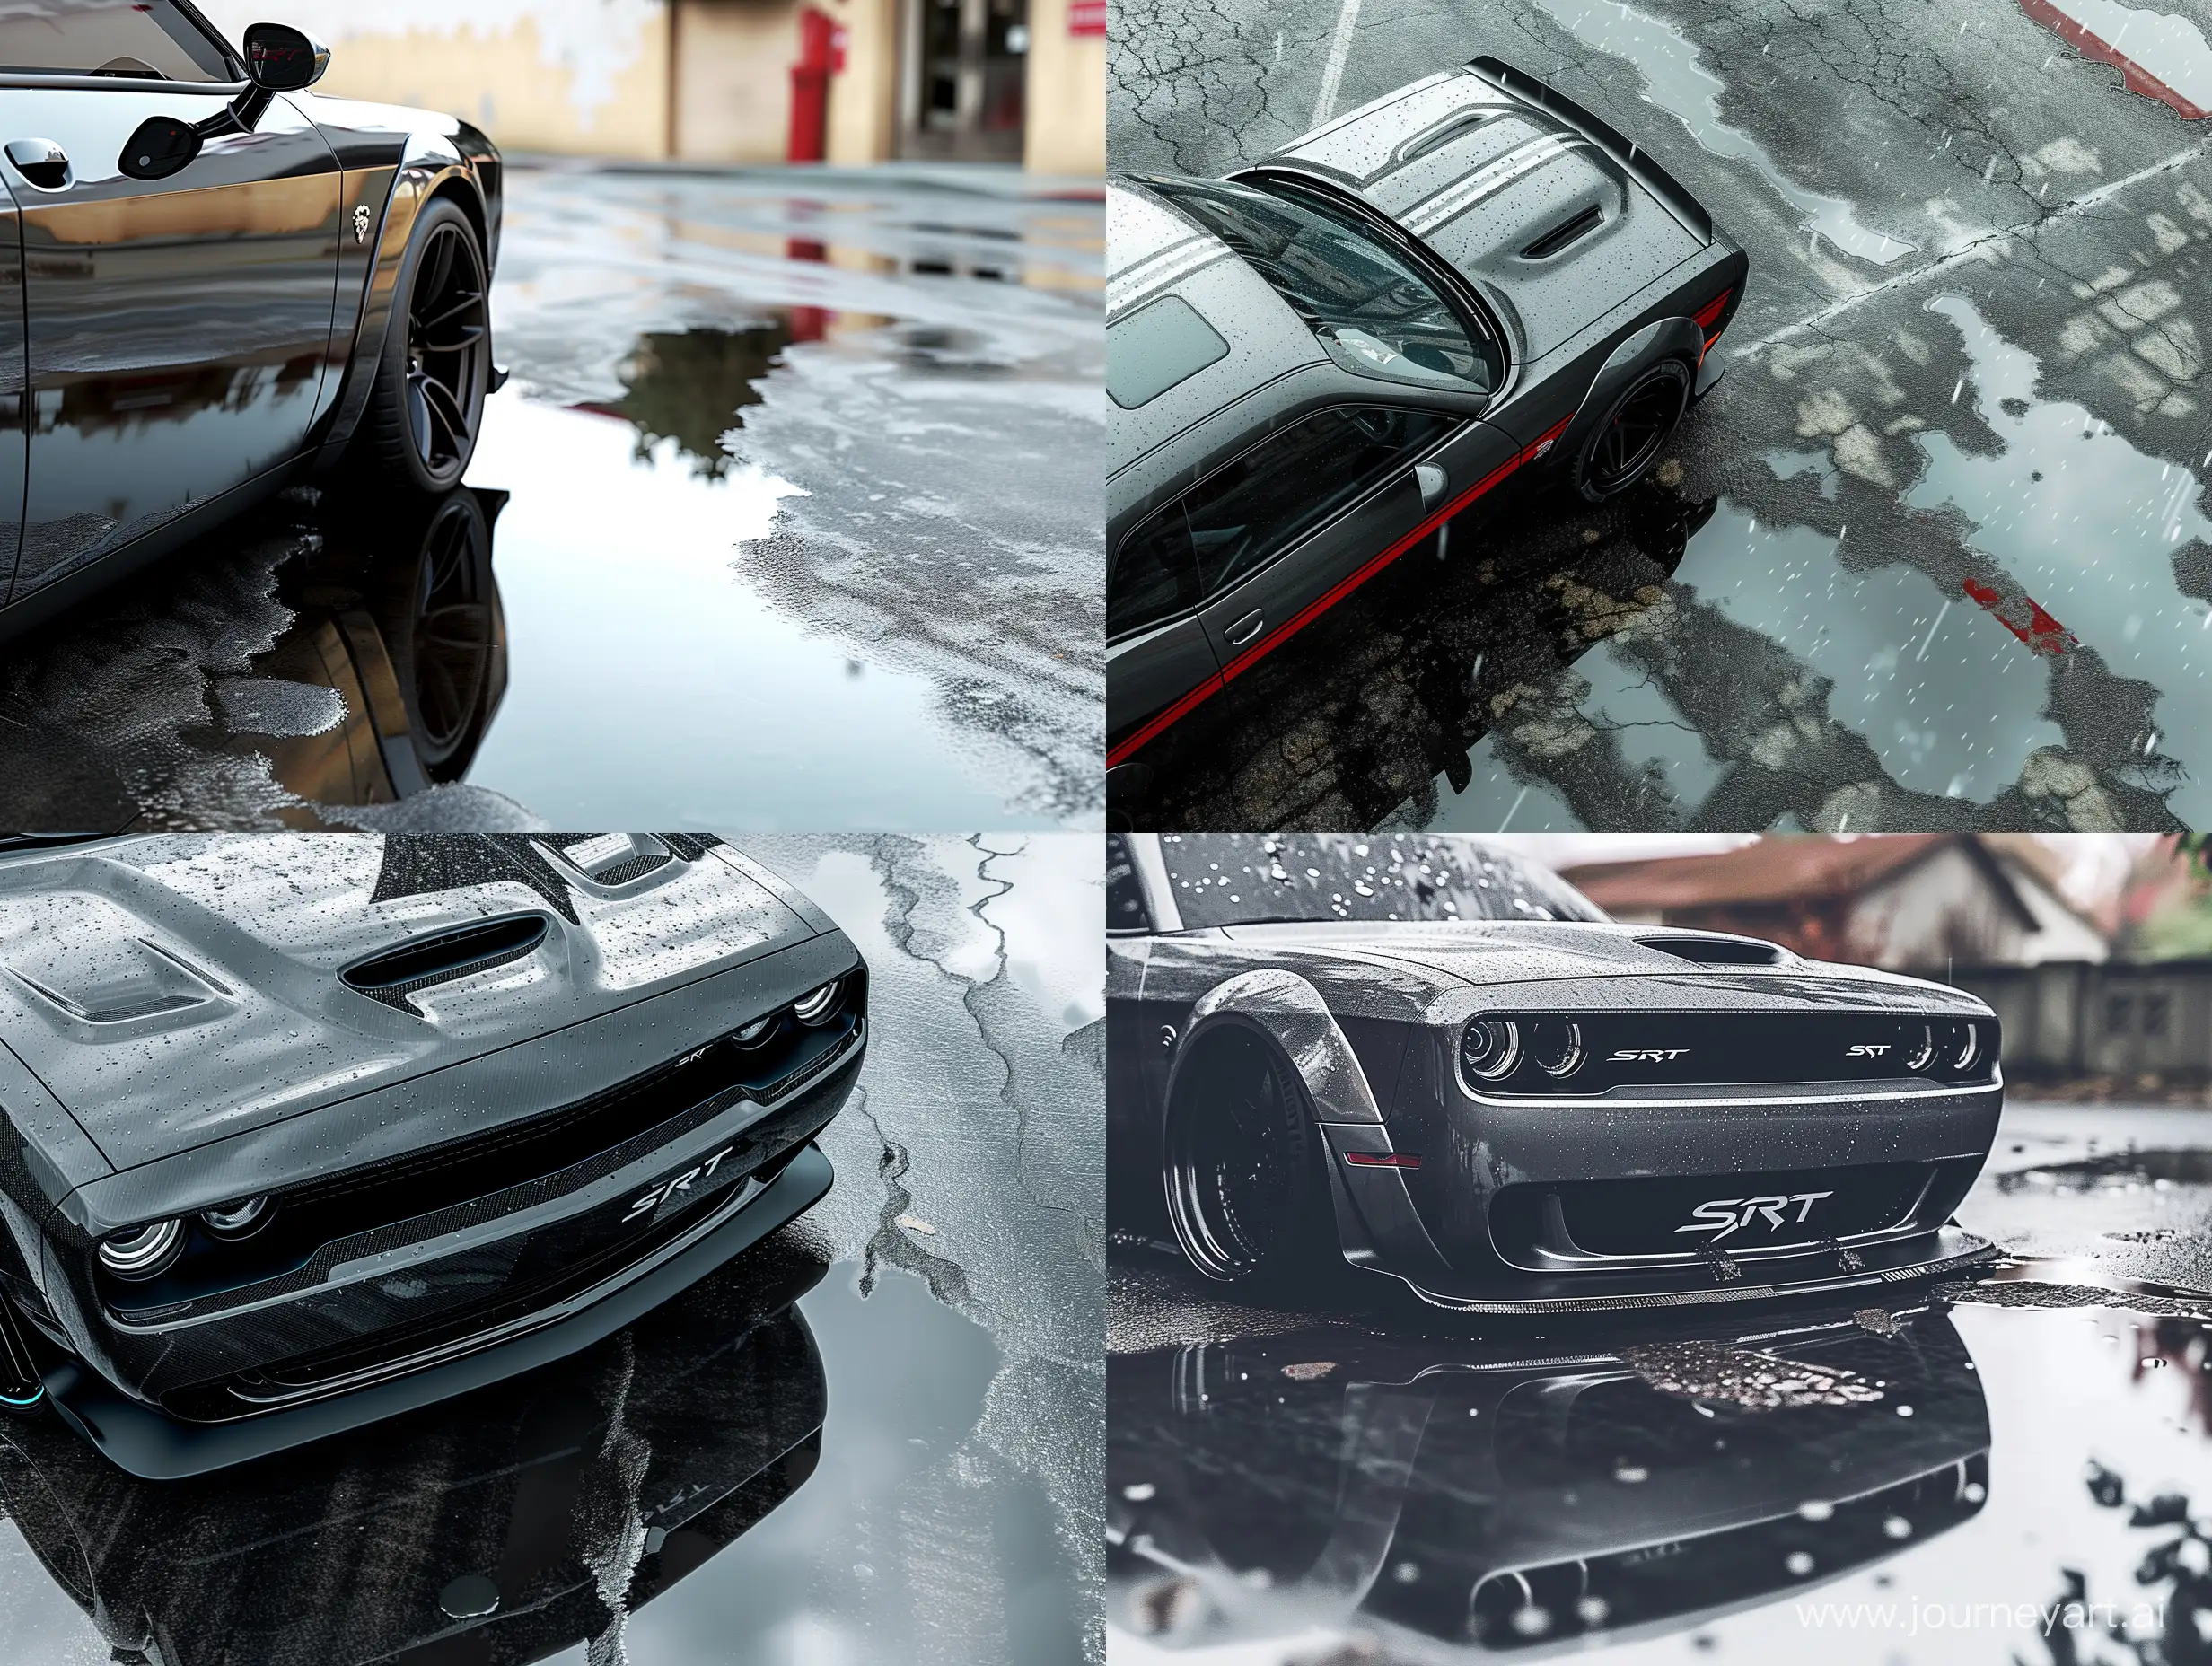 Dodge Challenger SRT carbon trim, wet asphalt, puddle, carbon black dodge challenger body kit  illustration gta v style
